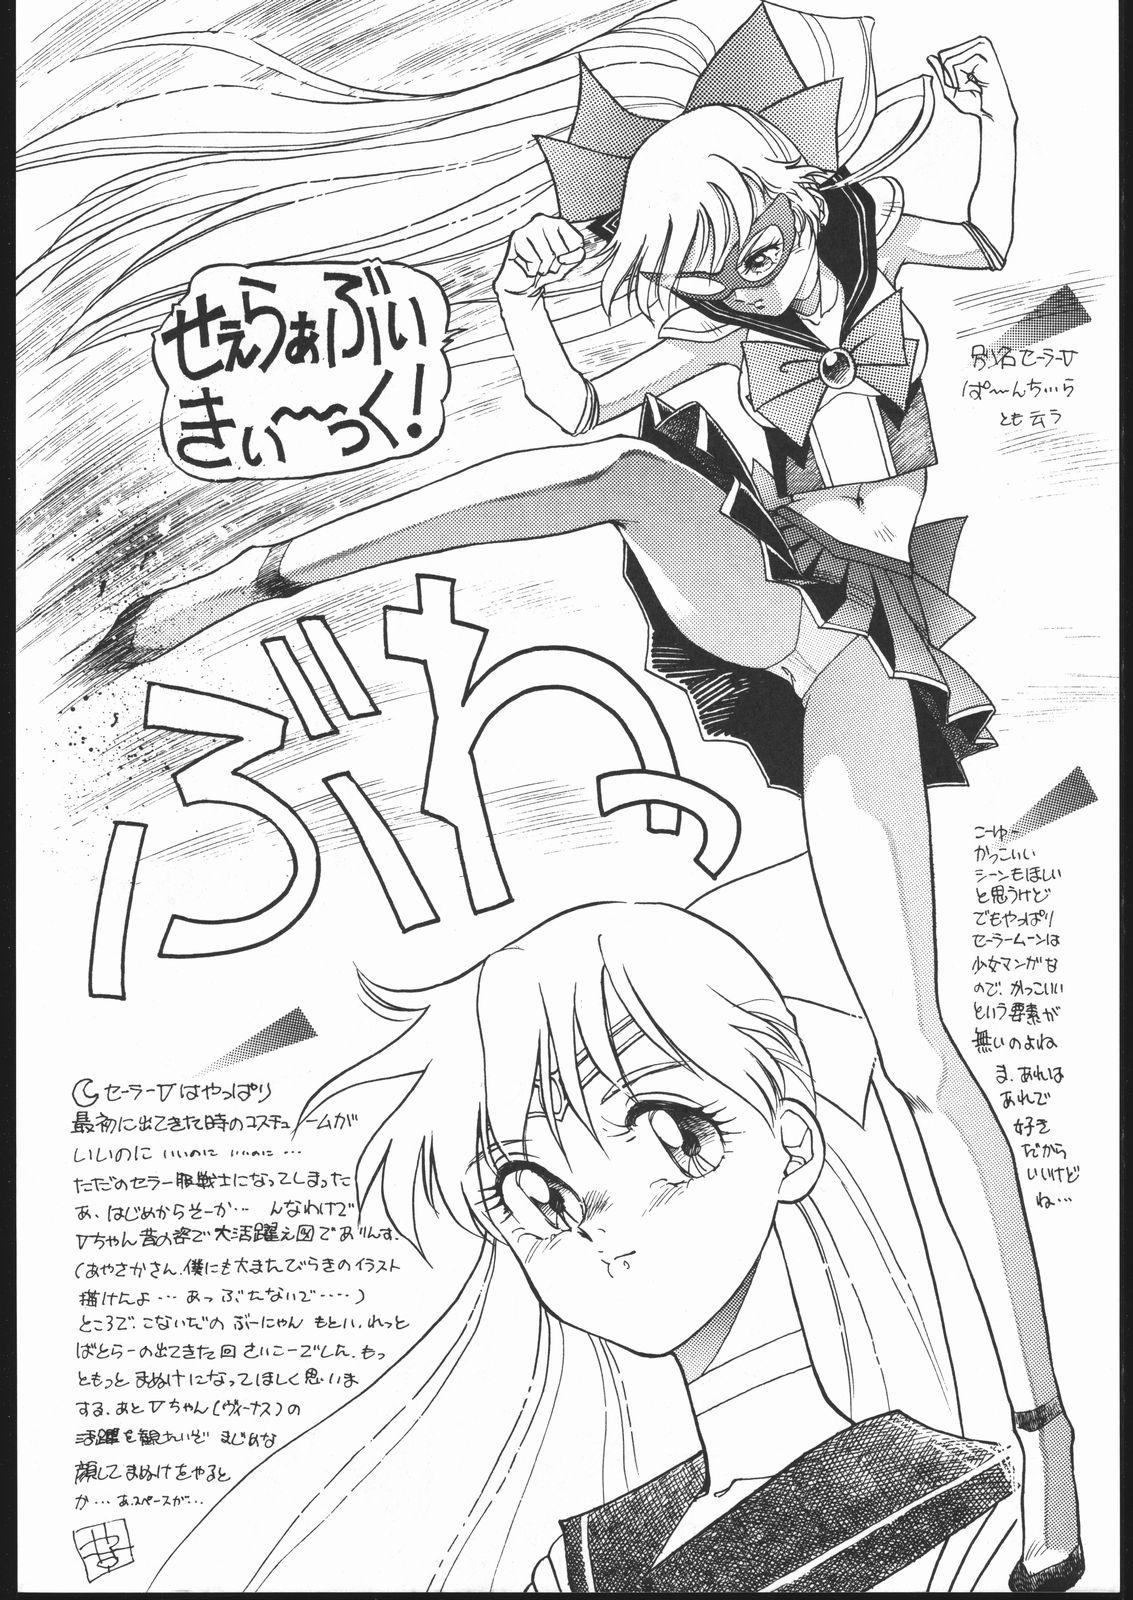 Punish Gekkou Endymion 2 - Sailor moon Nut - Page 5